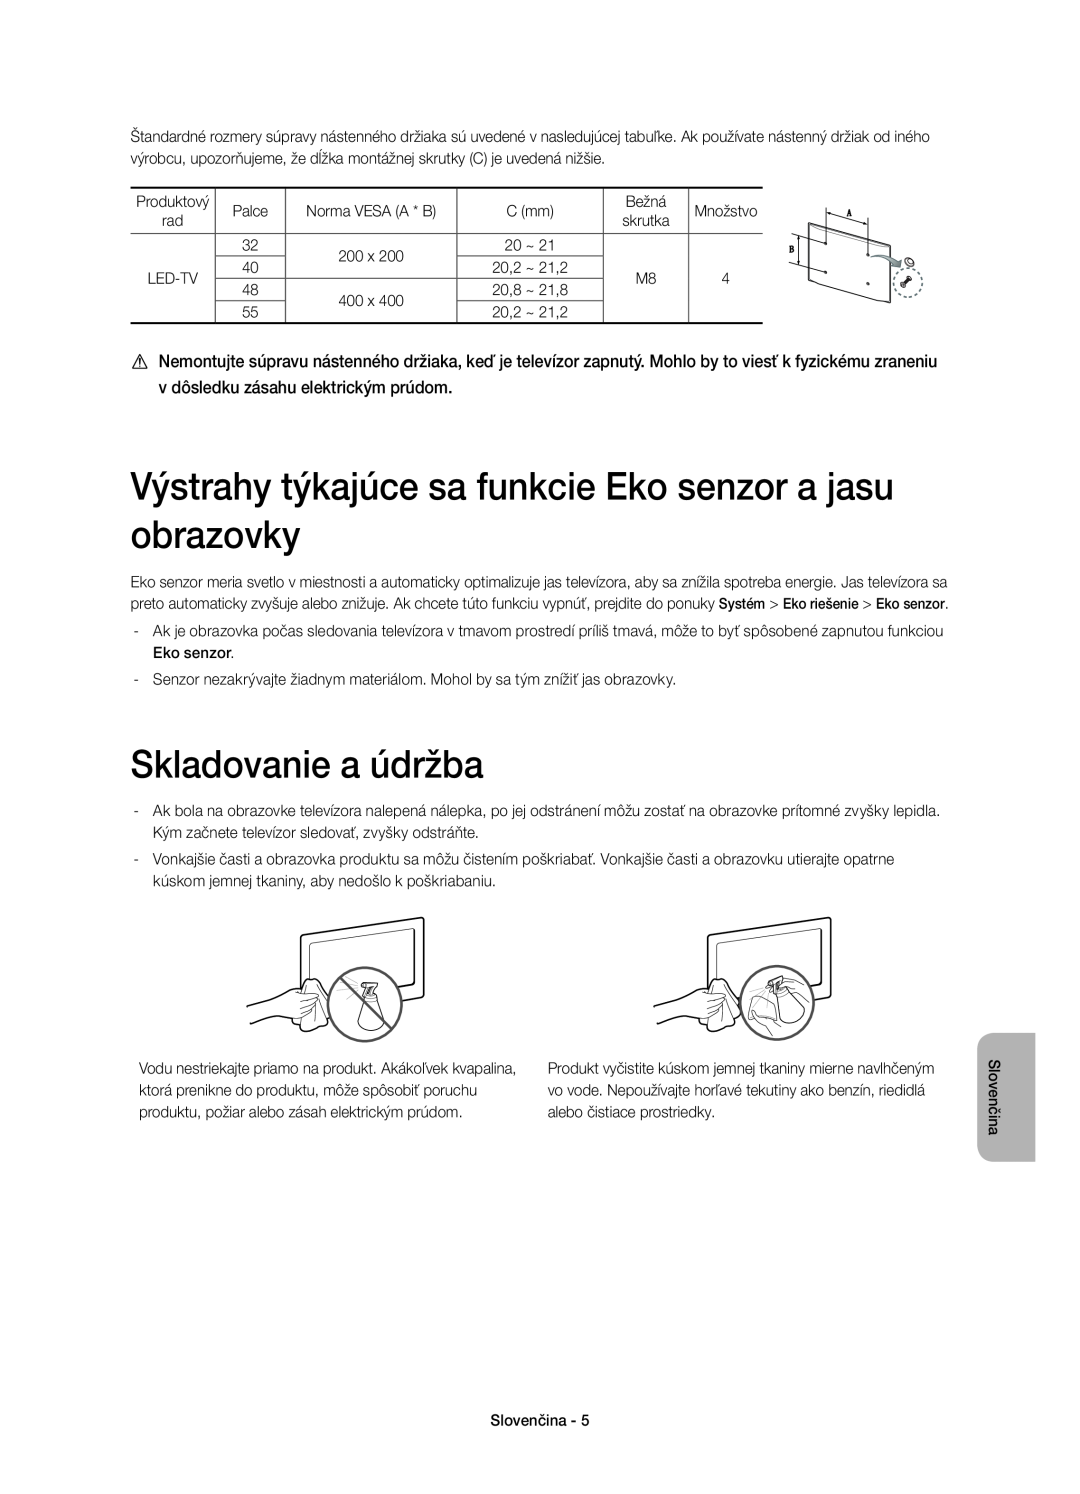 Samsung UE40H6410SSXZG, UE55H6410SSXXH manual Výstrahy týkajúce sa funkcie Eko senzor a jasu obrazovky, Skladovanie a údržba 